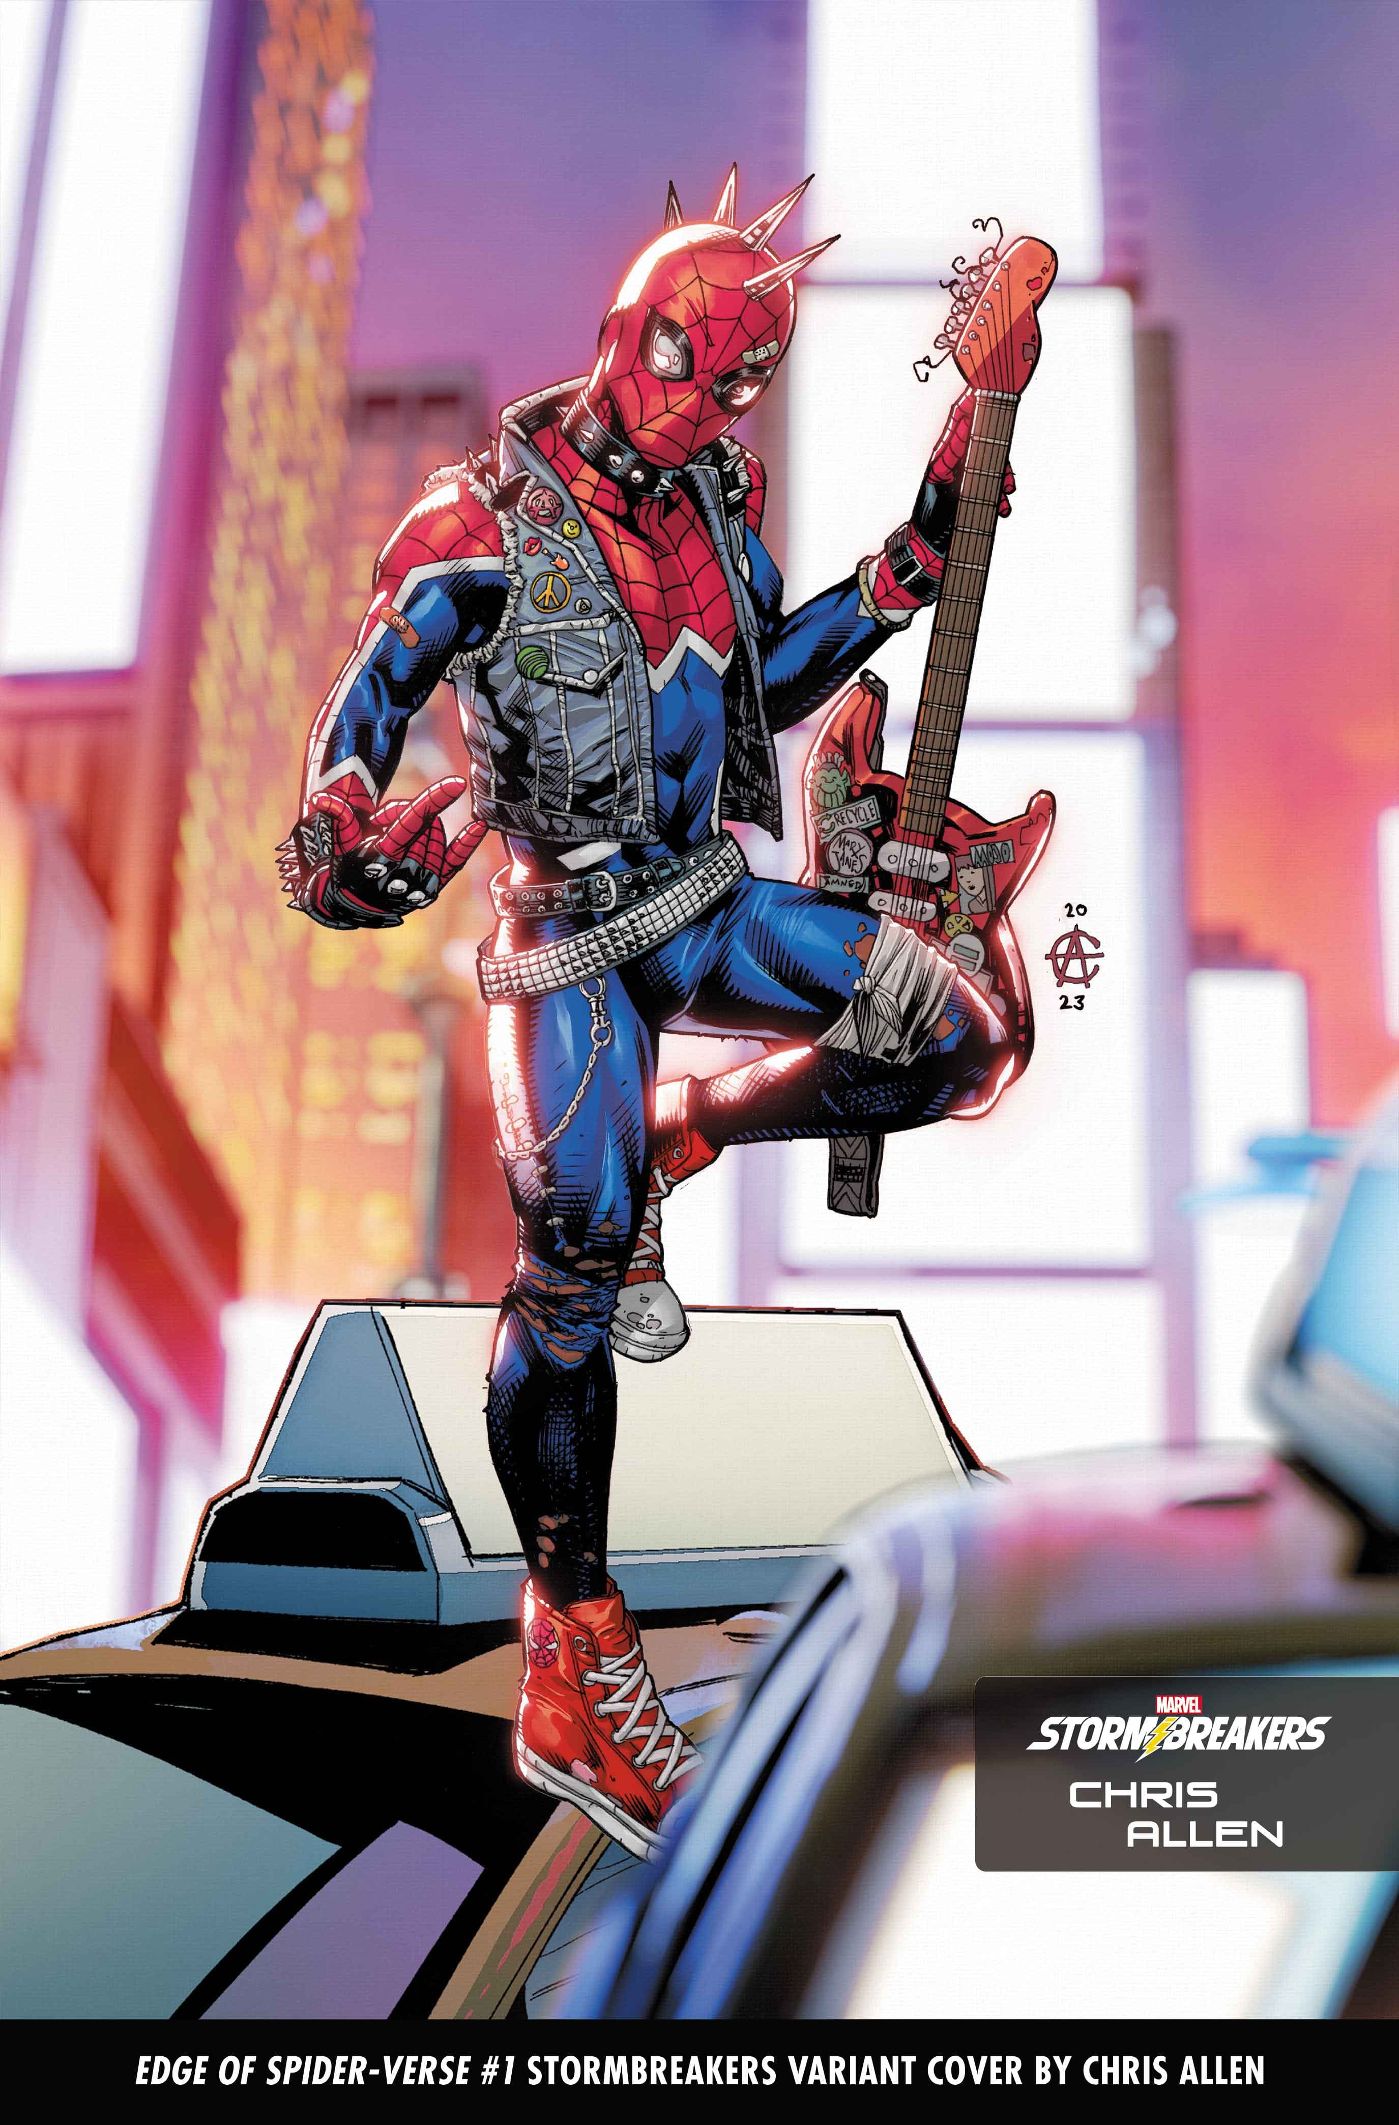 Chris Allen, portada variante de Stormbreakers Edge of Spider-Verse #1, con Spider-Punk